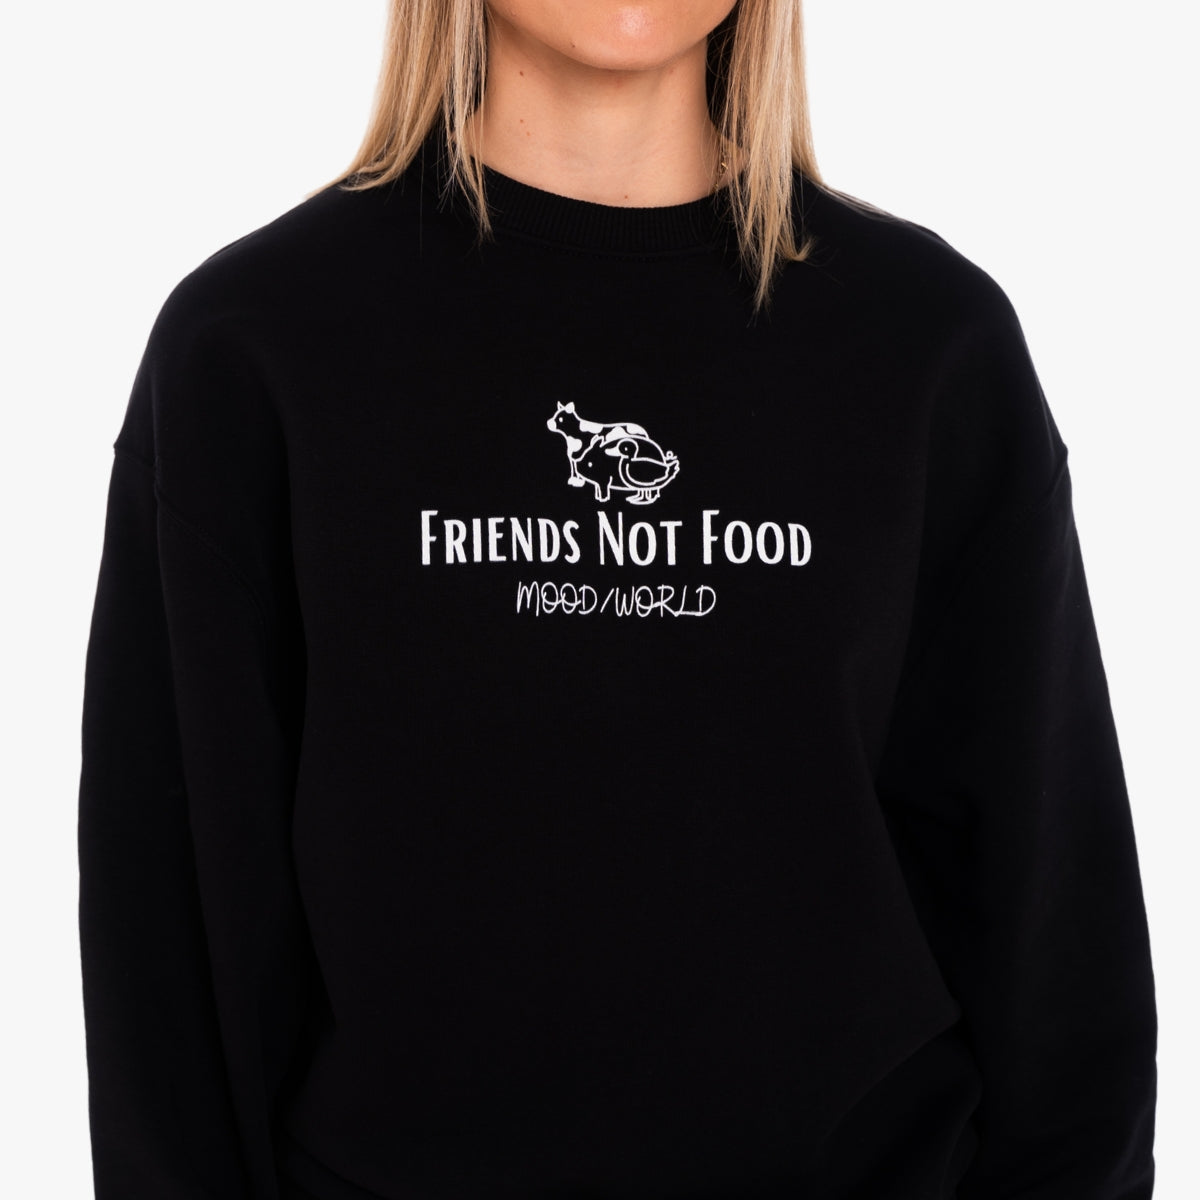 'FRIENDS NOT FOOD Signature' Organic Oversize Sweatshirt in der Farbe Black als Detail Nahaufnahme getragen von einem weiblichen Model